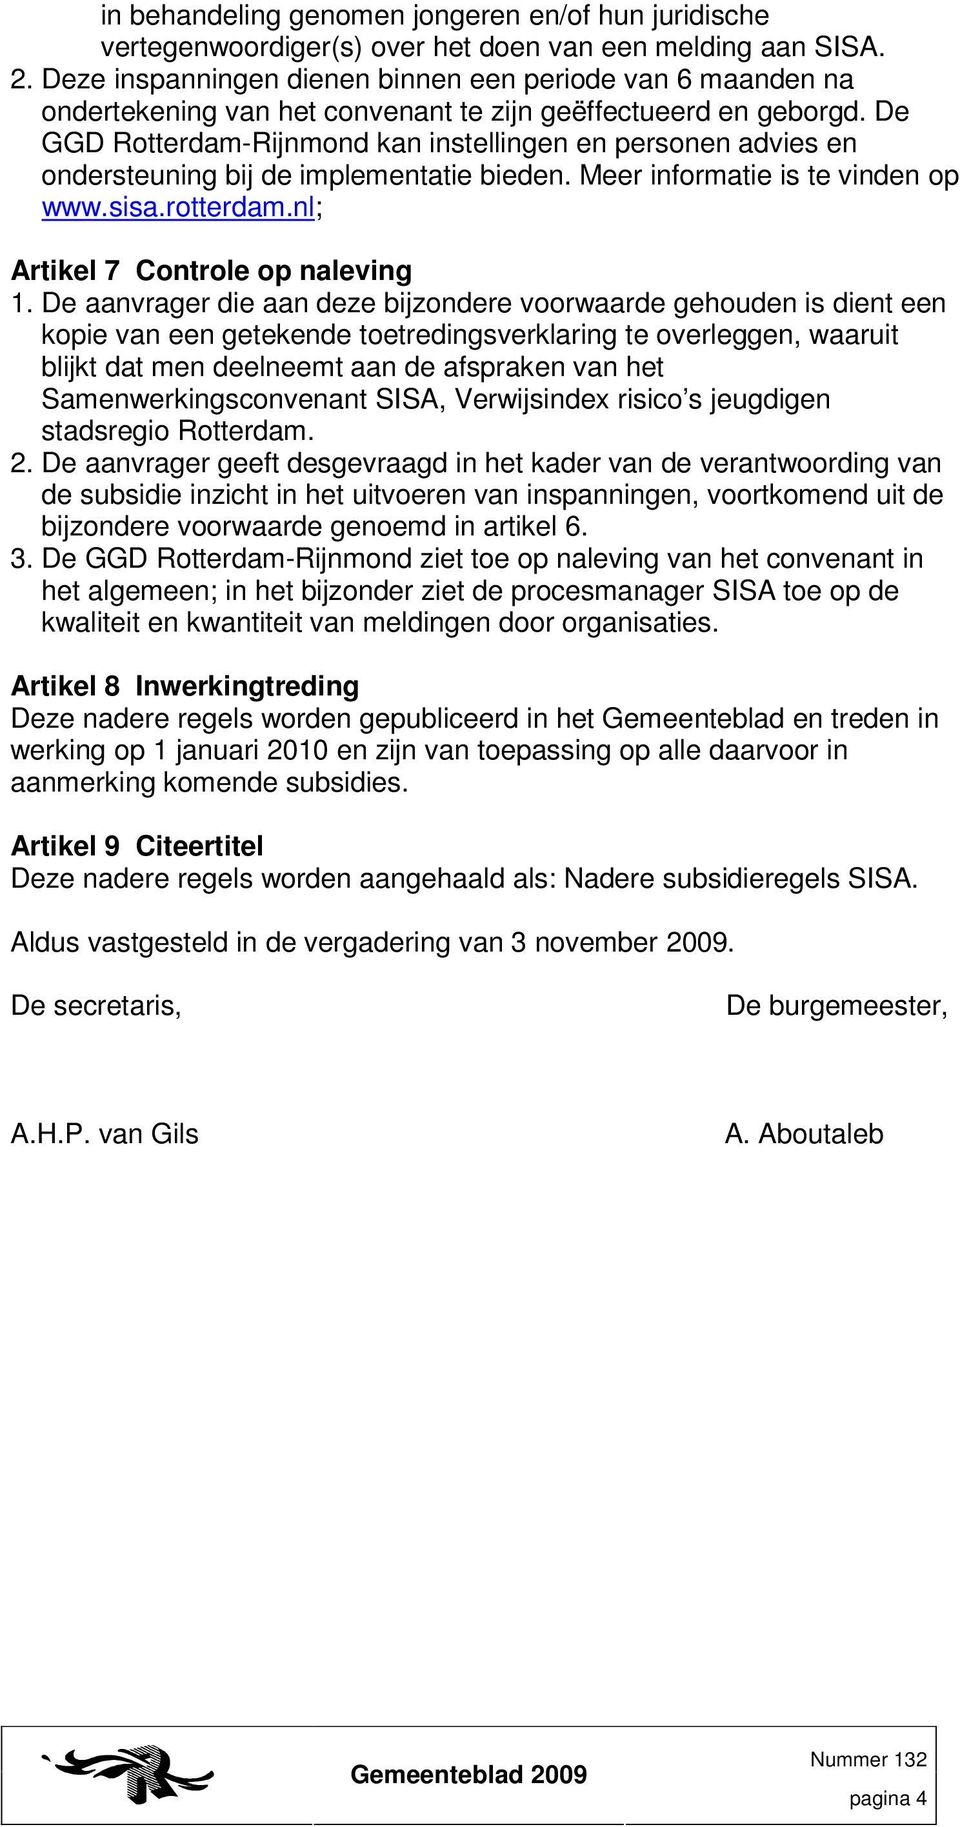 De GGD Rotterdam-Rijnmond kan instellingen en personen advies en ondersteuning bij de implementatie bieden. Meer informatie is te vinden op www.sisa.rotterdam.nl; Artikel 7 Controle op naleving 1.